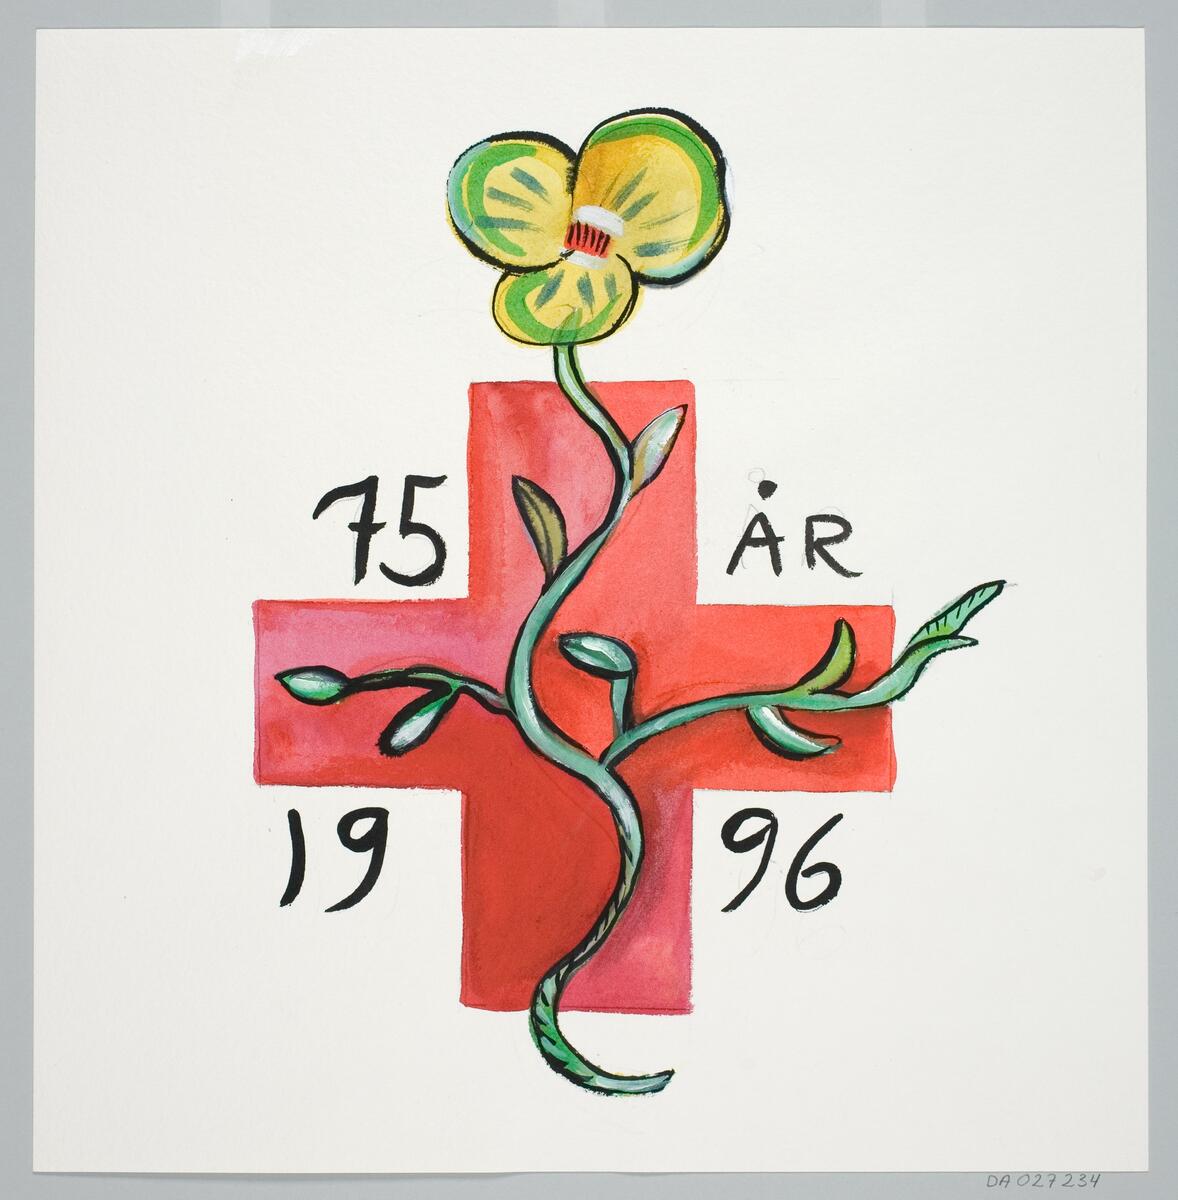 Förslag till affisch för Röda korset, Kronobergs distriktets 75 års dag 1996. Motiv med ett rött kors med en slingrande växt på.